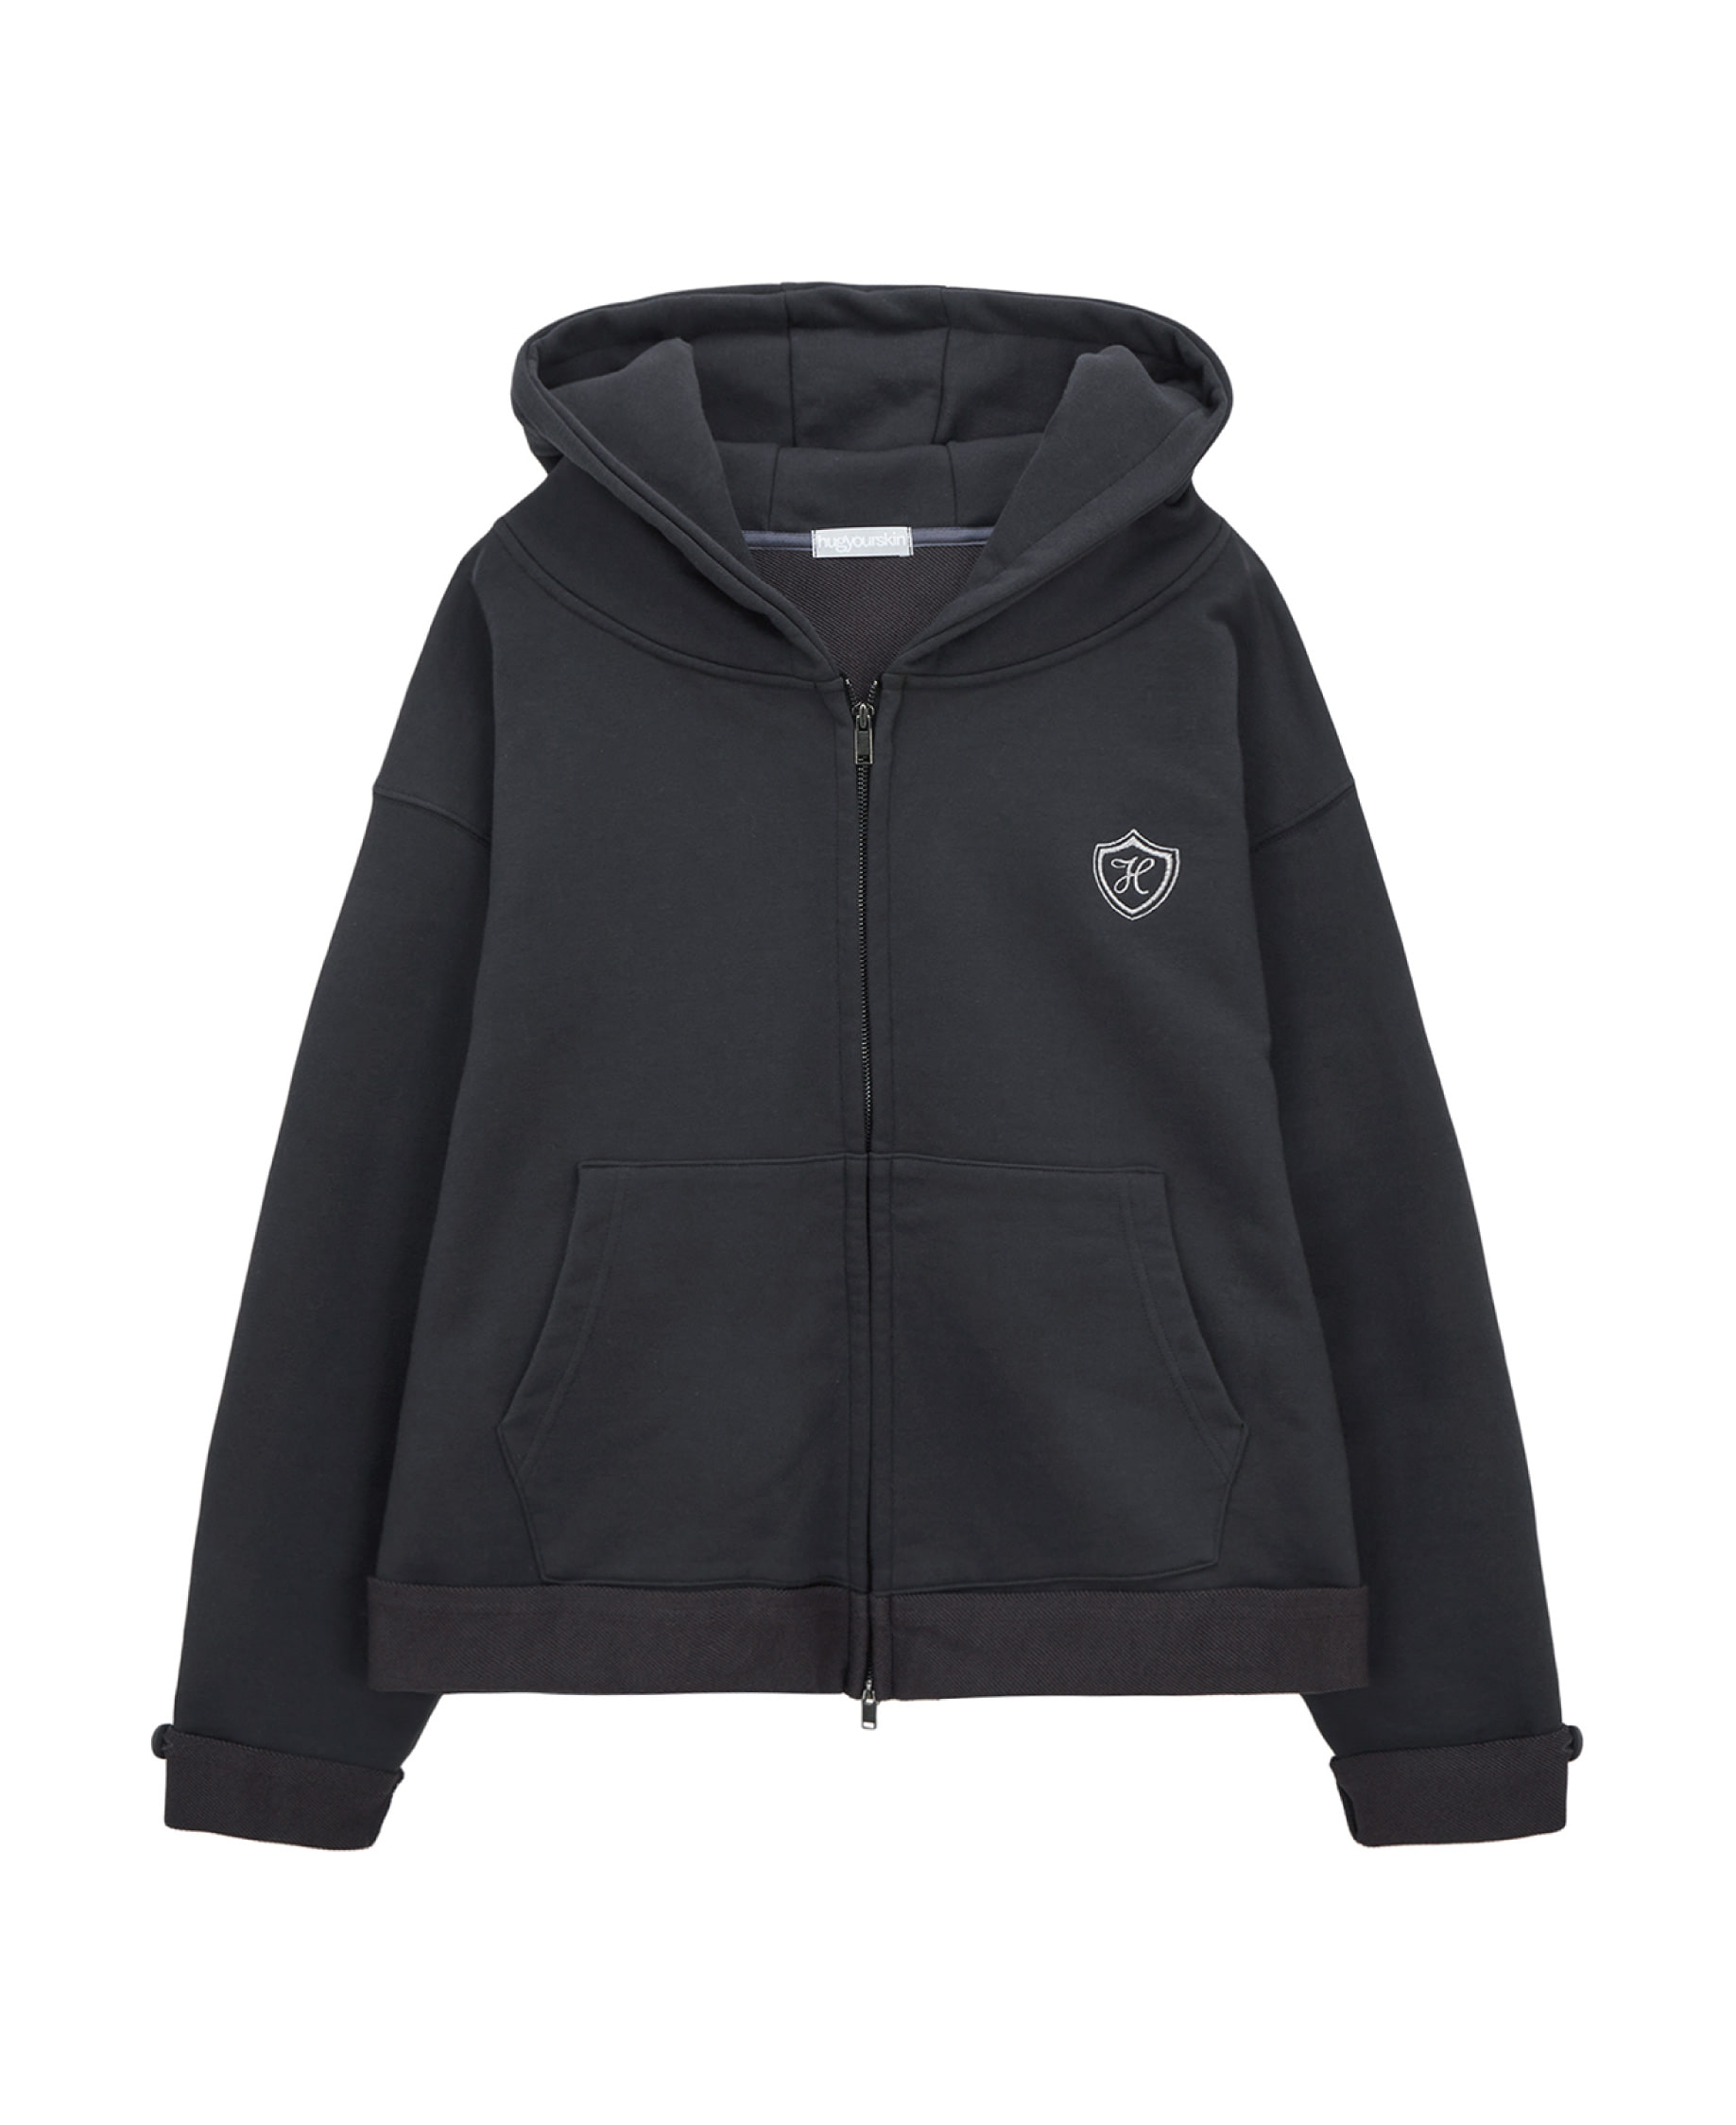 School hoodie zip-up (charcoal)